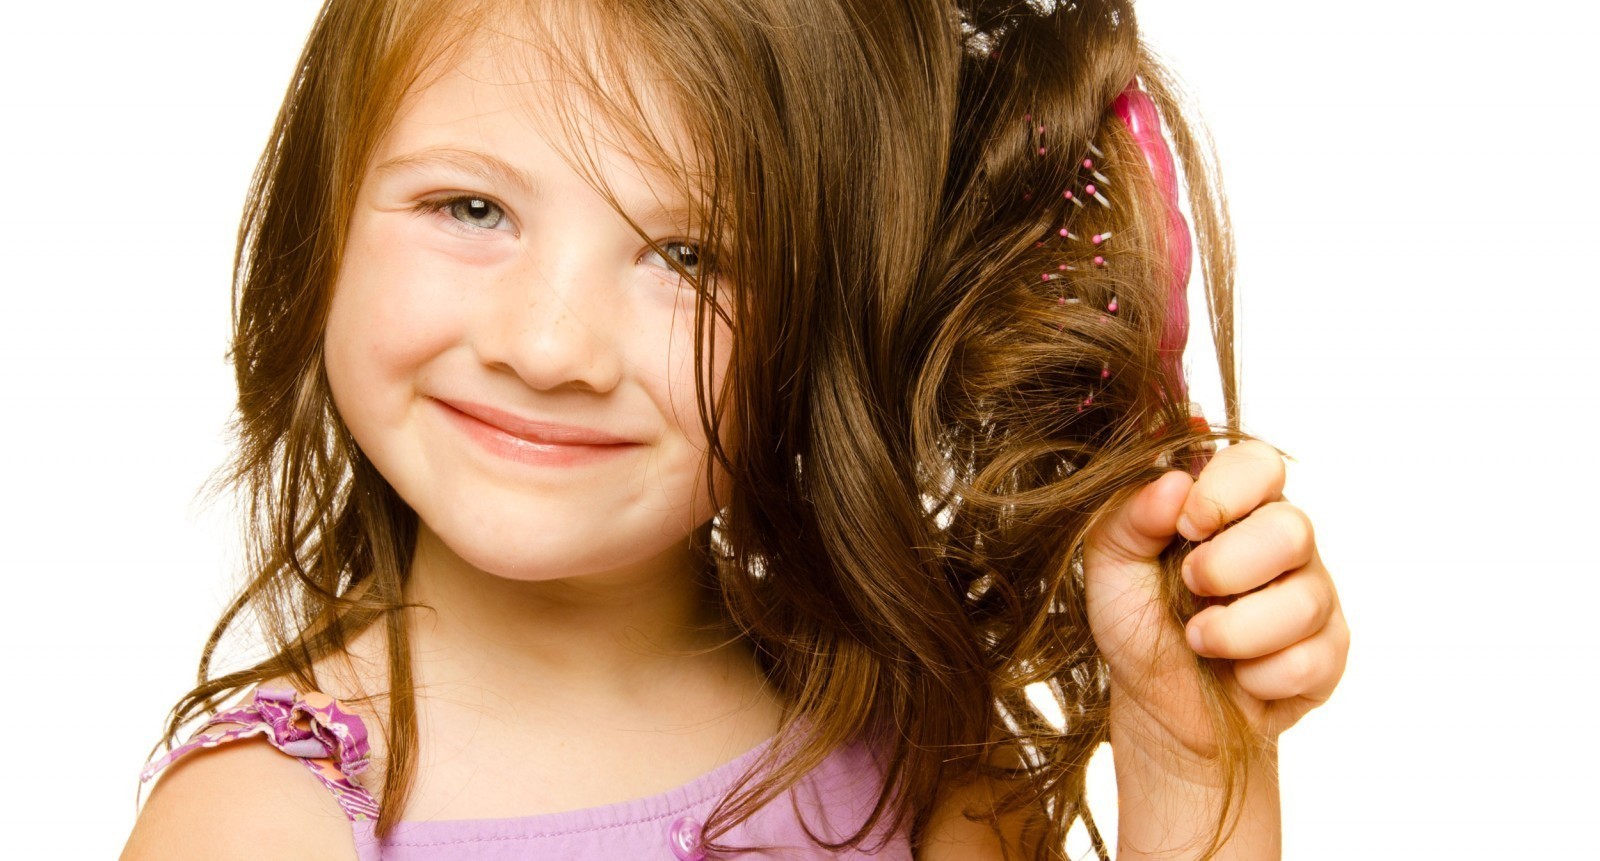 Waschen Sie das Haar Ihres Kindes mit gutem Shampoo, entdecken Sie die guten Shampoos für Kinder